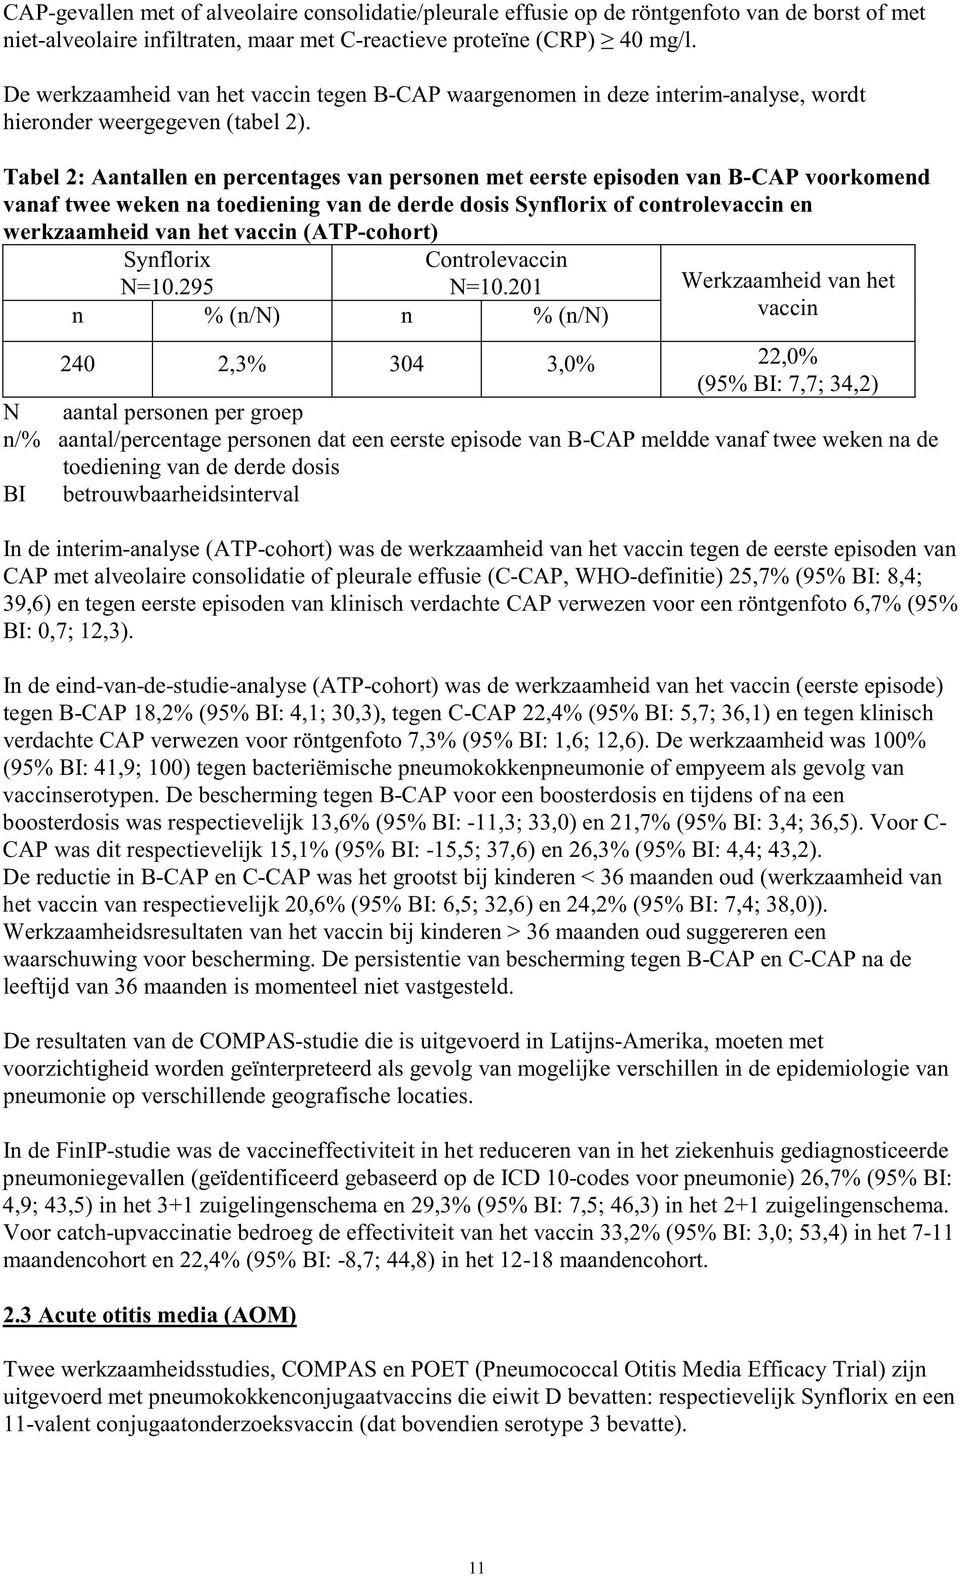 Tabel 2: Aantallen en percentages van personen met eerste episoden van B-CAP voorkomend vanaf twee weken na toediening van de derde dosis Synflorix of controlevaccin en werkzaamheid van het vaccin